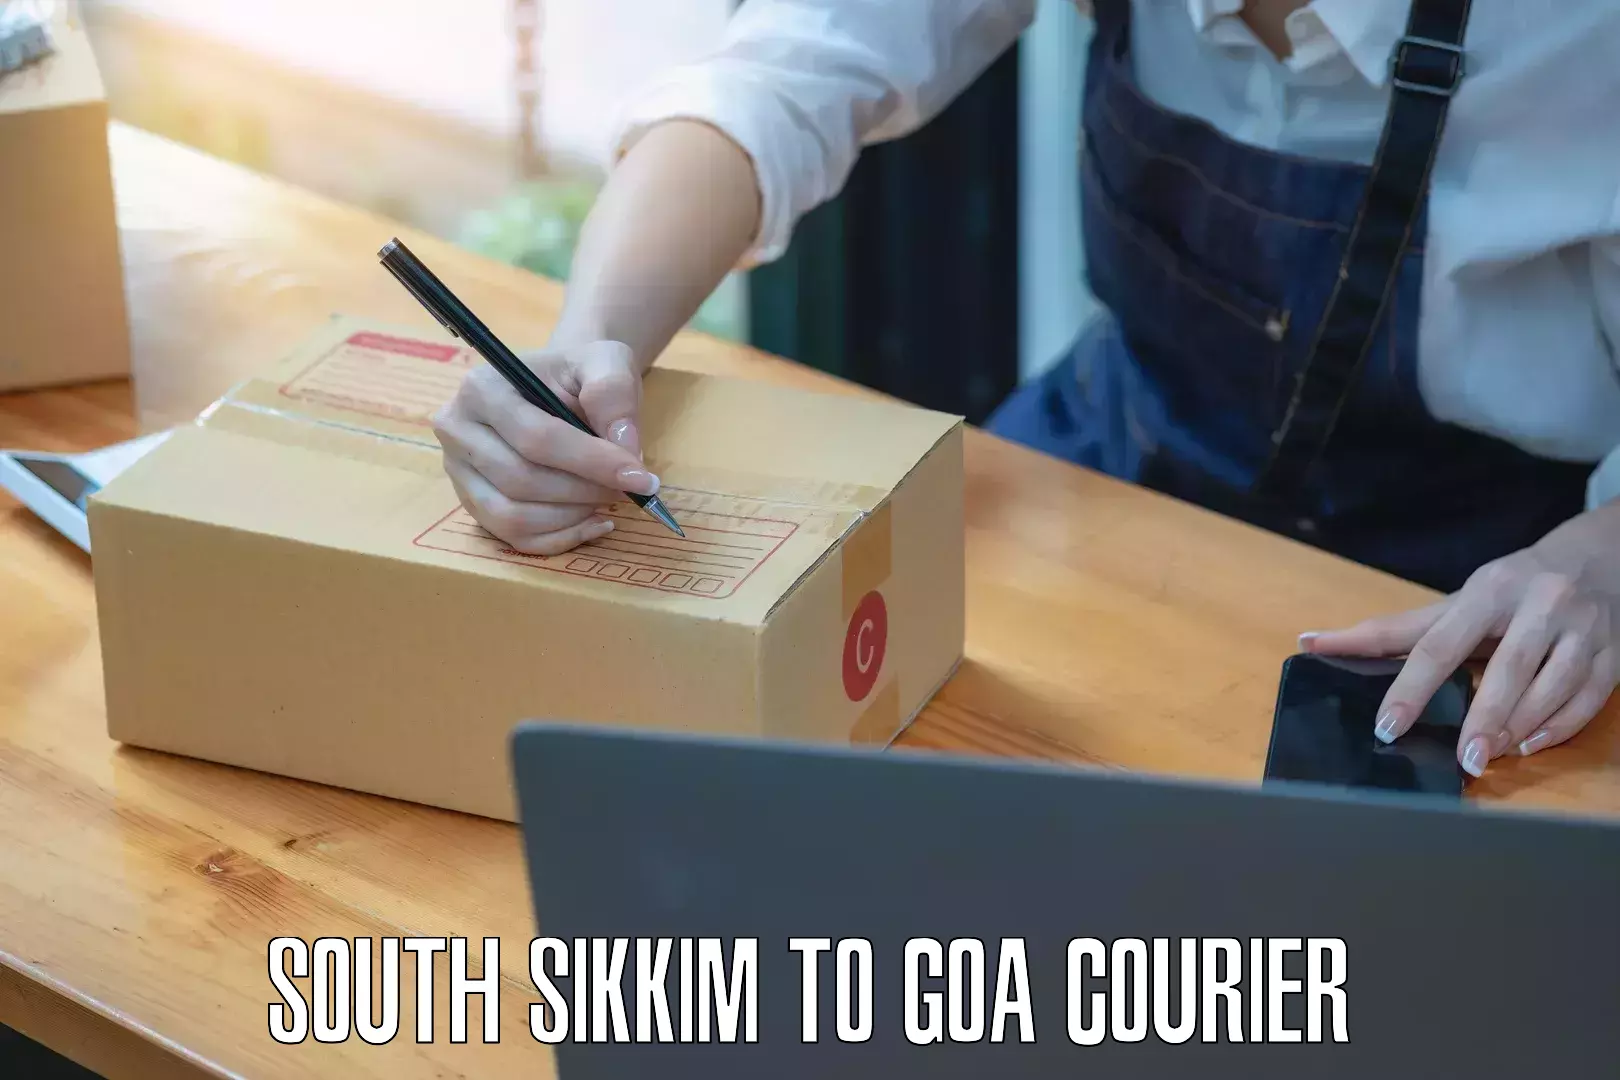 Innovative courier solutions South Sikkim to Vasco da Gama